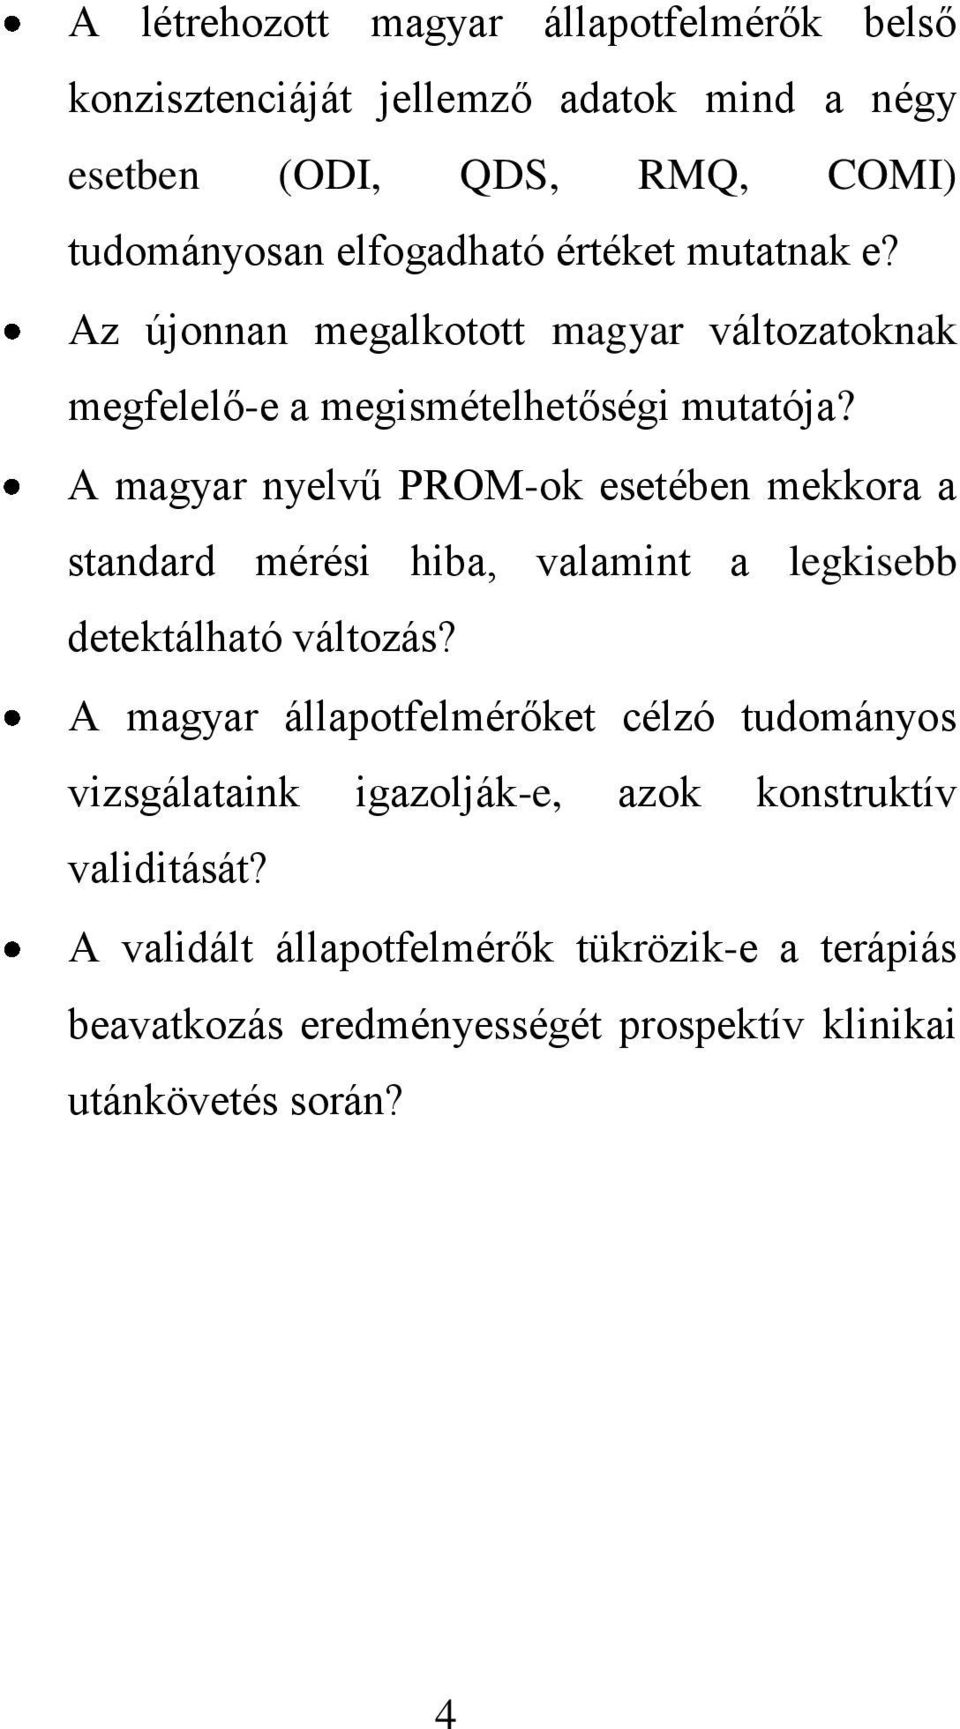 A magyar nyelvű PROM-ok esetében mekkora a standard mérési hiba, valamint a legkisebb detektálható változás?